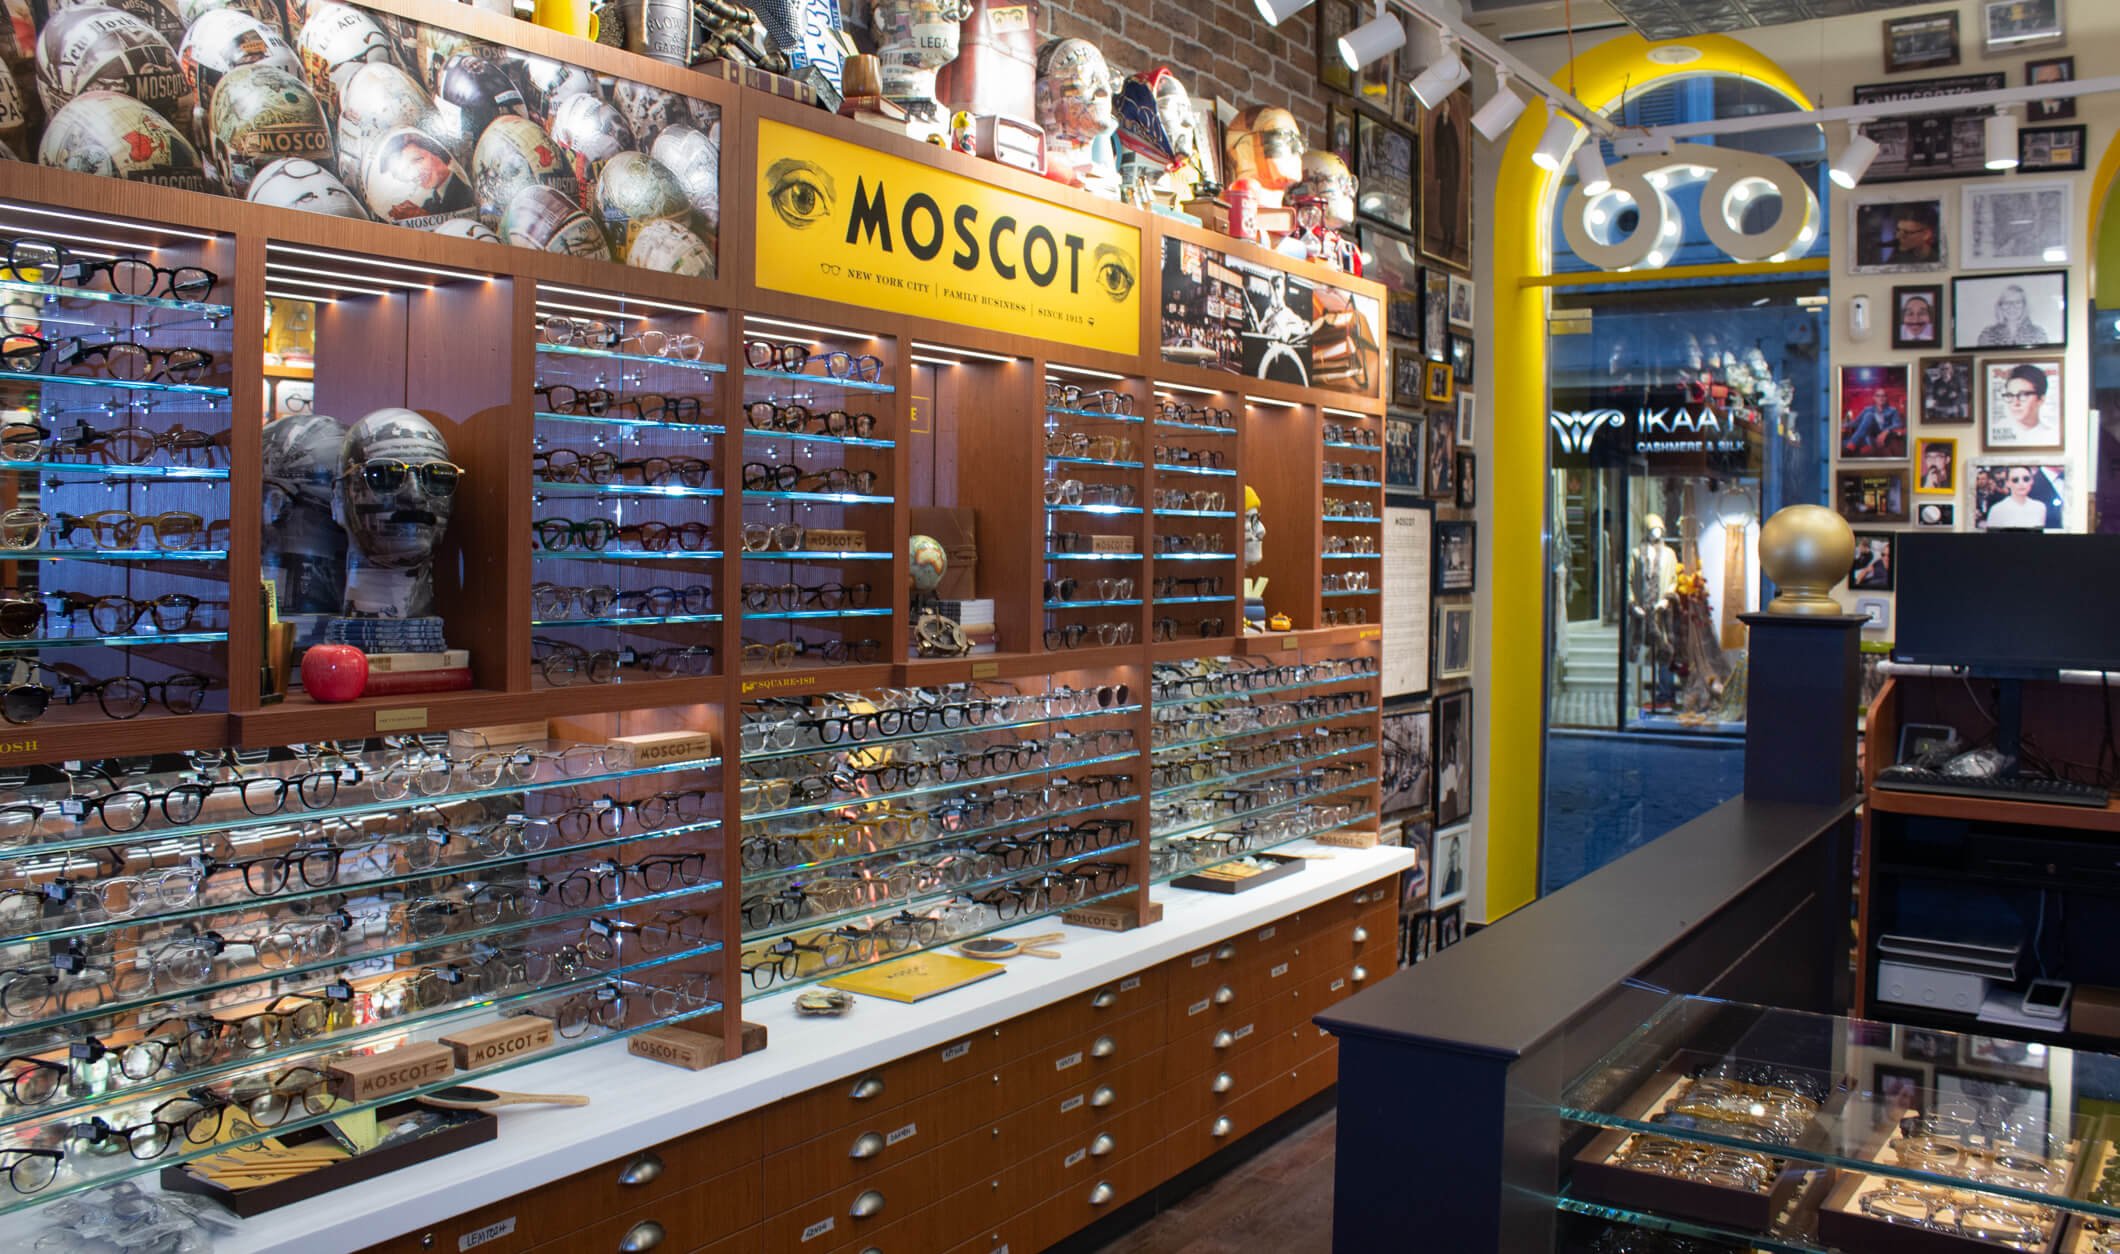 The MOSCOT Frattina Shop interior